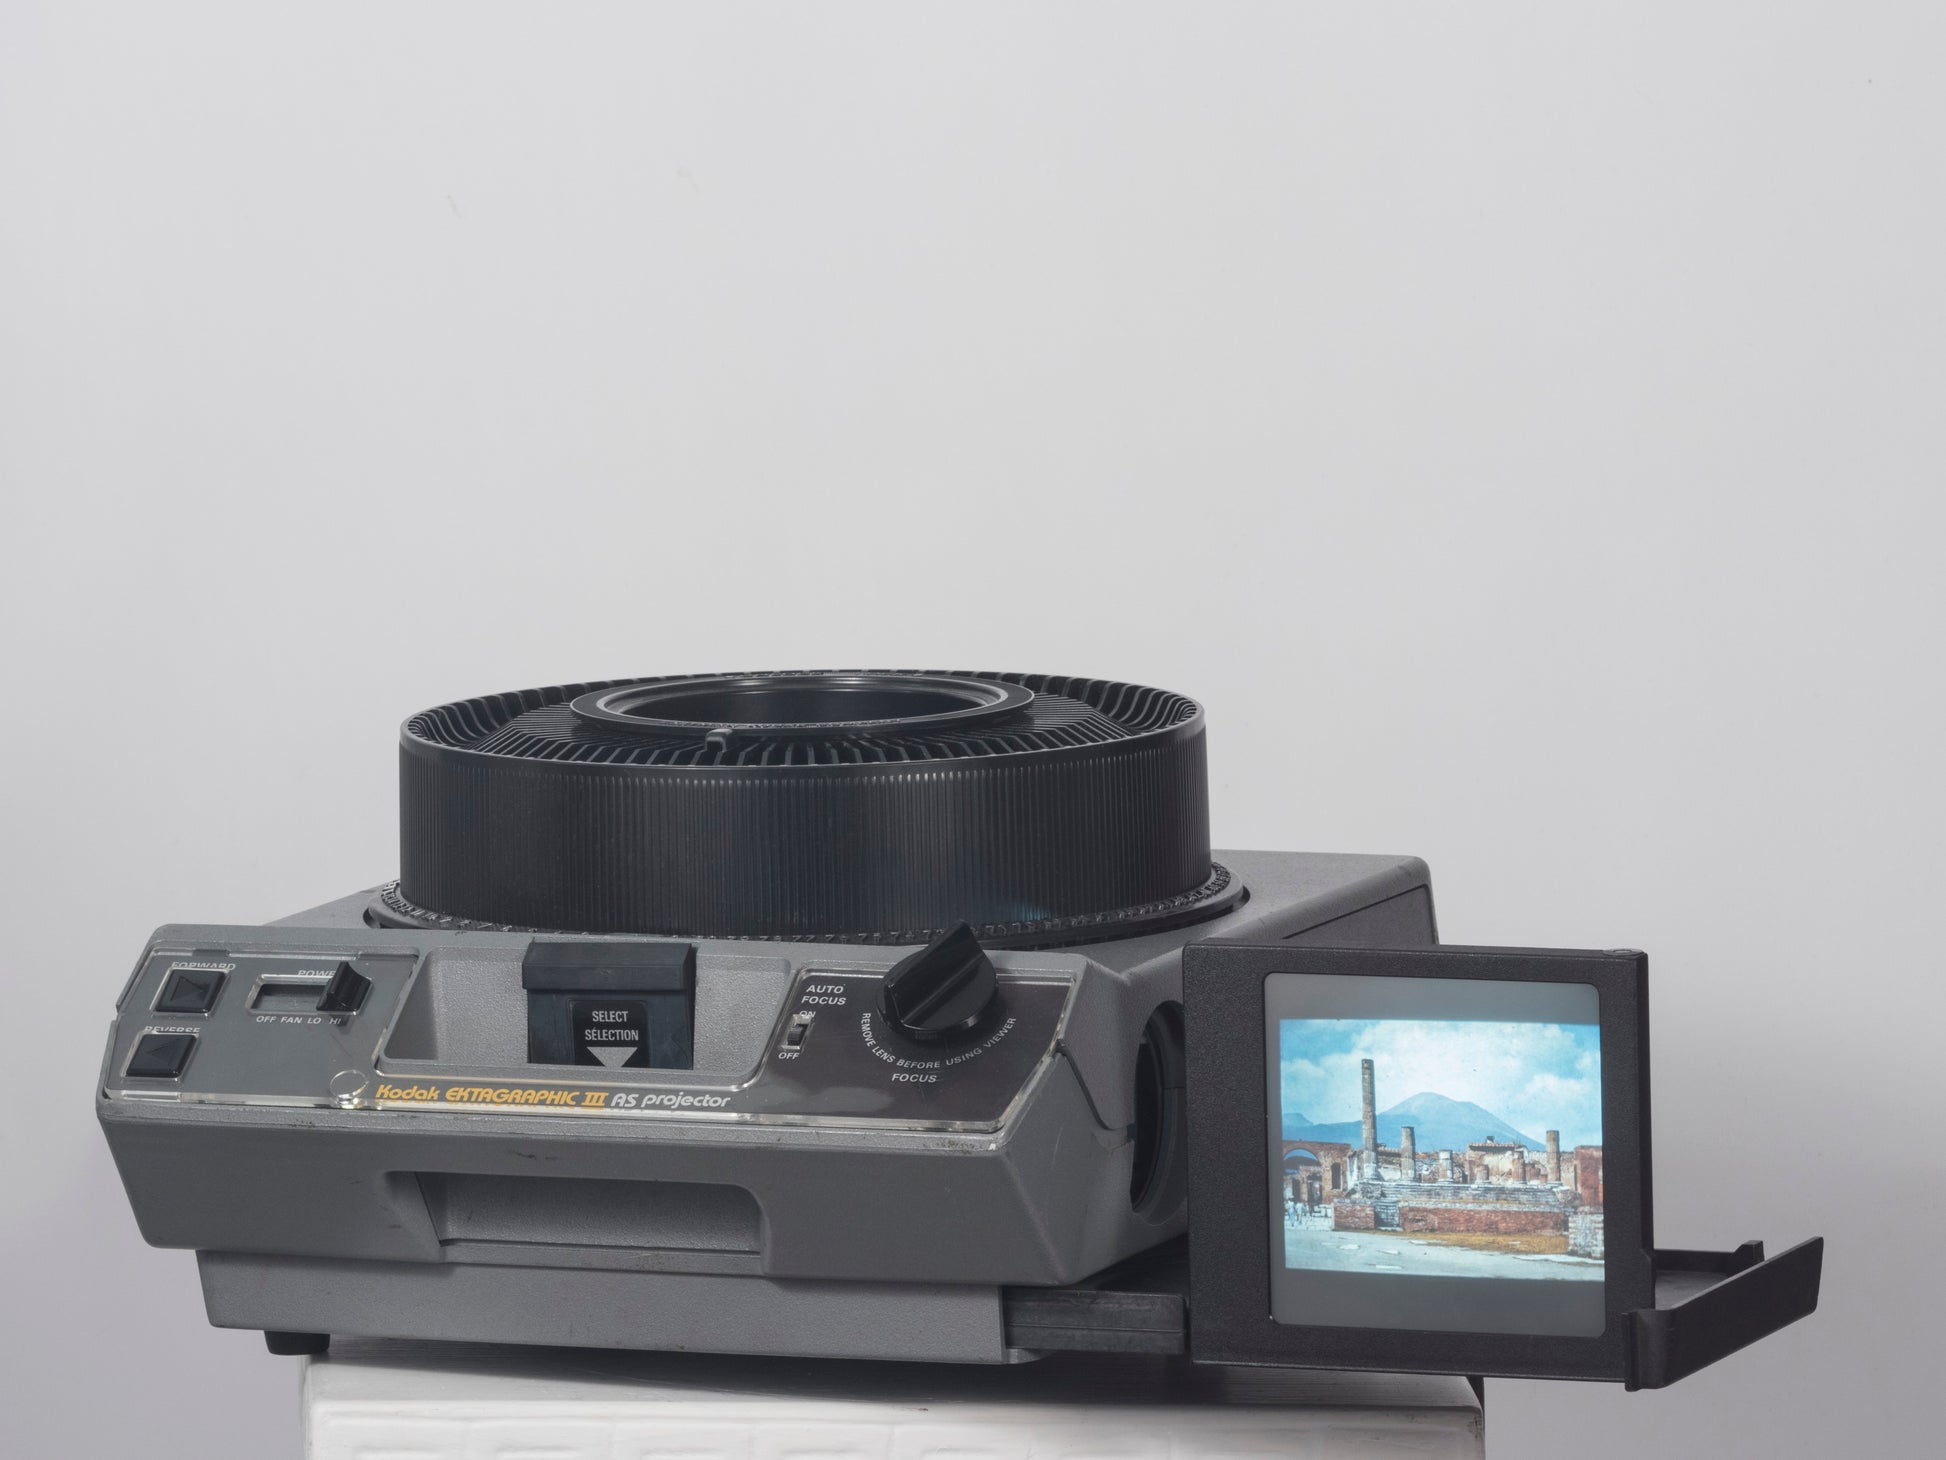 Kodak Ektagraphic Slide Projector Model E-2 - proiettore per diapositive  35mm - Industria, manifattura, artigianato, Eastman Kodak Co. – Patrimonio  scientifico e tecnologico – Lombardia Beni Culturali